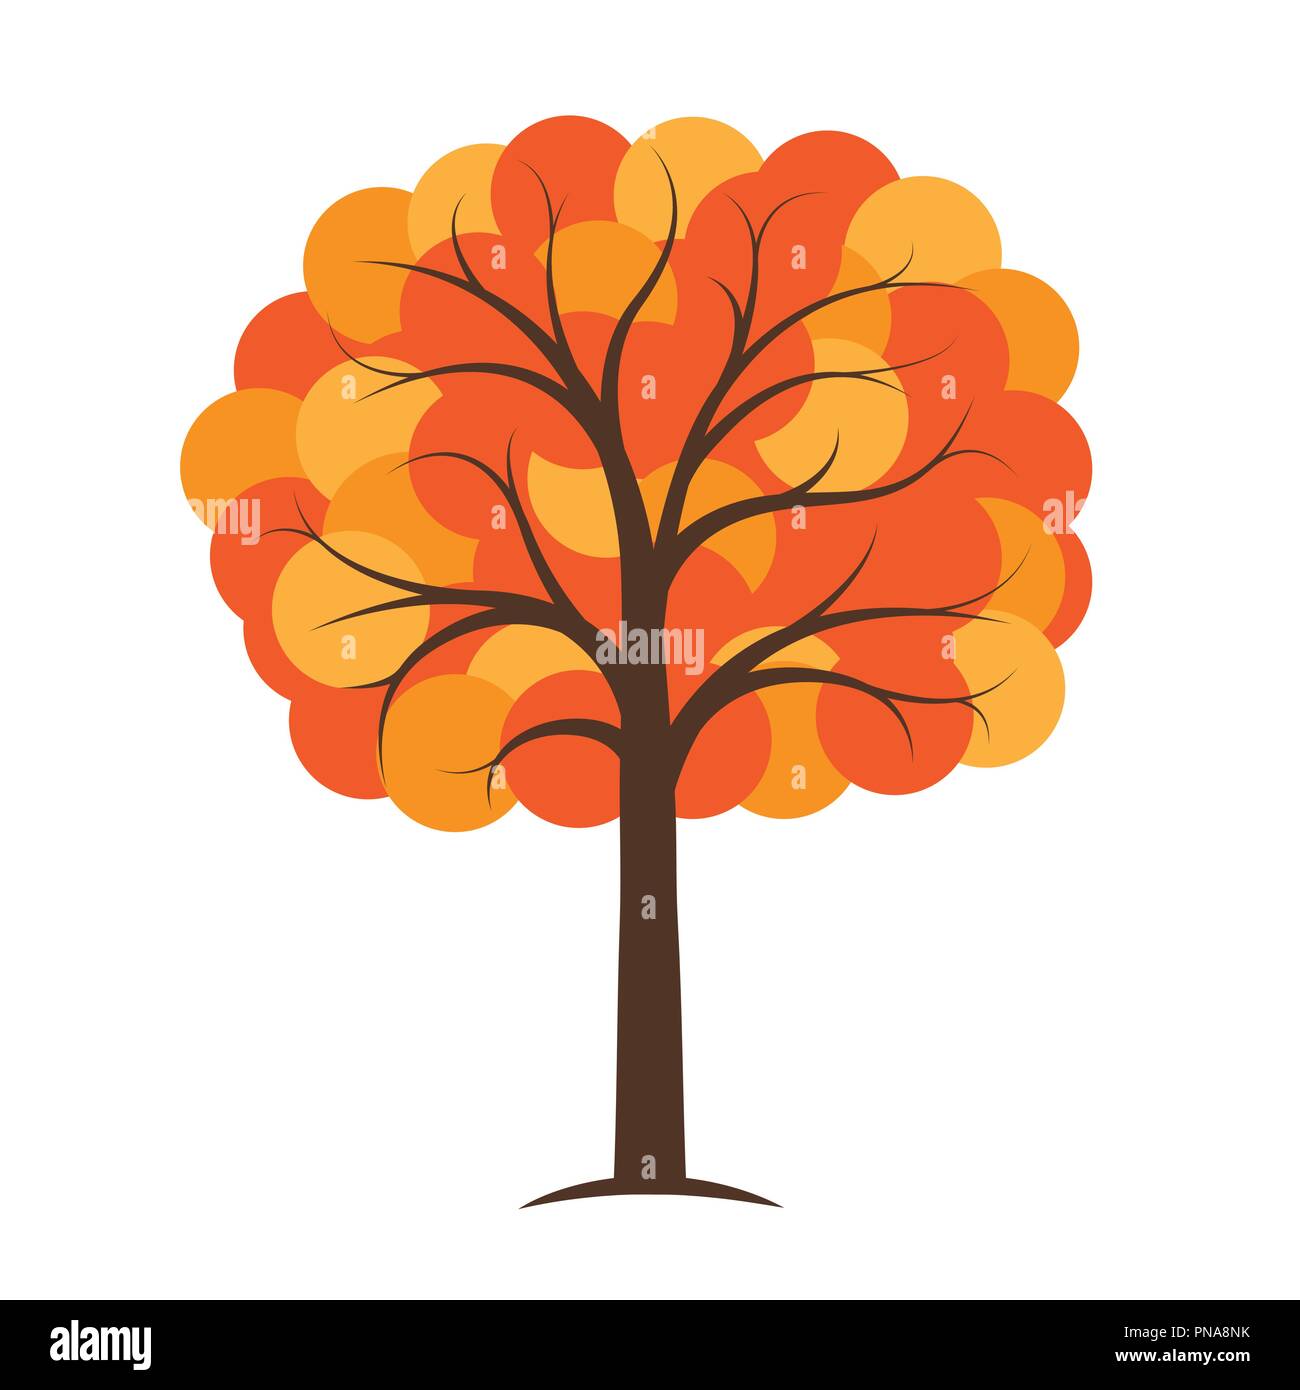 Arancio e giallo autumn tree illustrazione vettoriale EPS10 Illustrazione Vettoriale